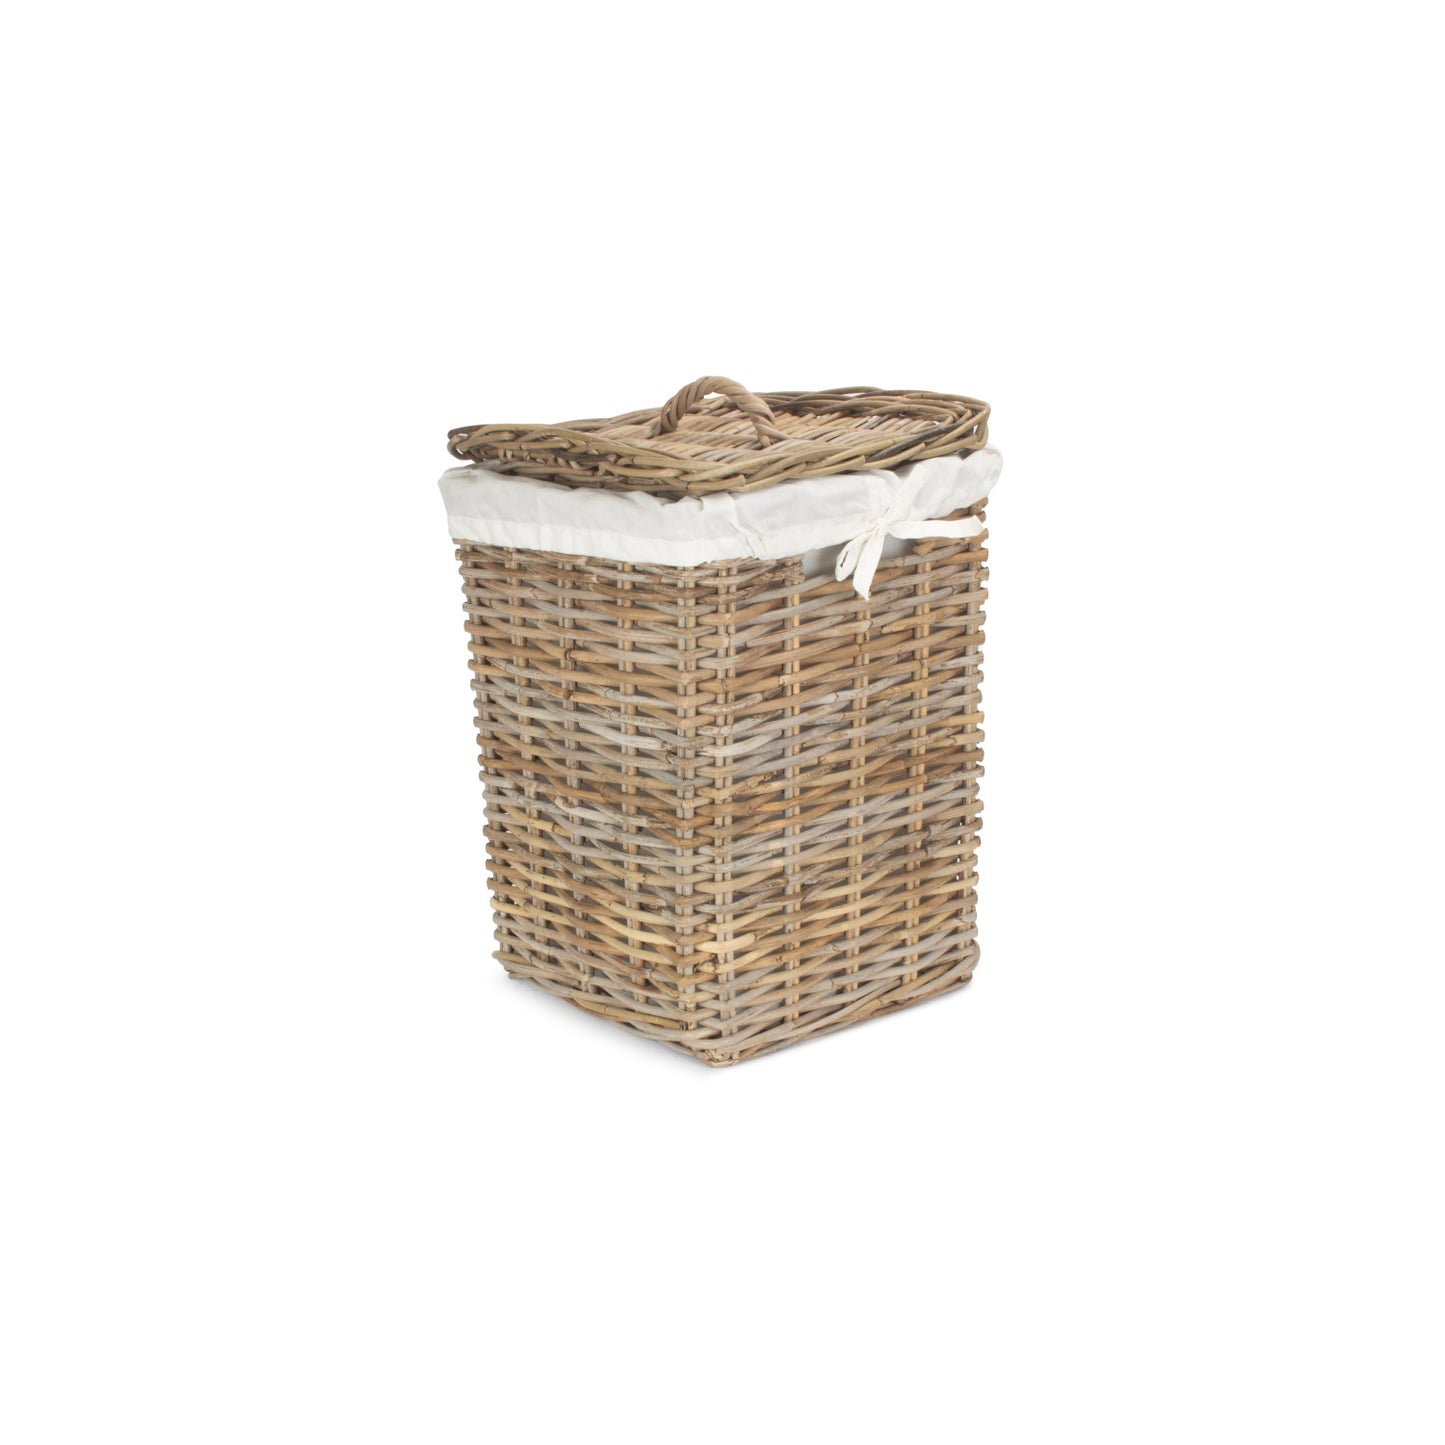 Small Square Rattan Laundry Hamper Basket